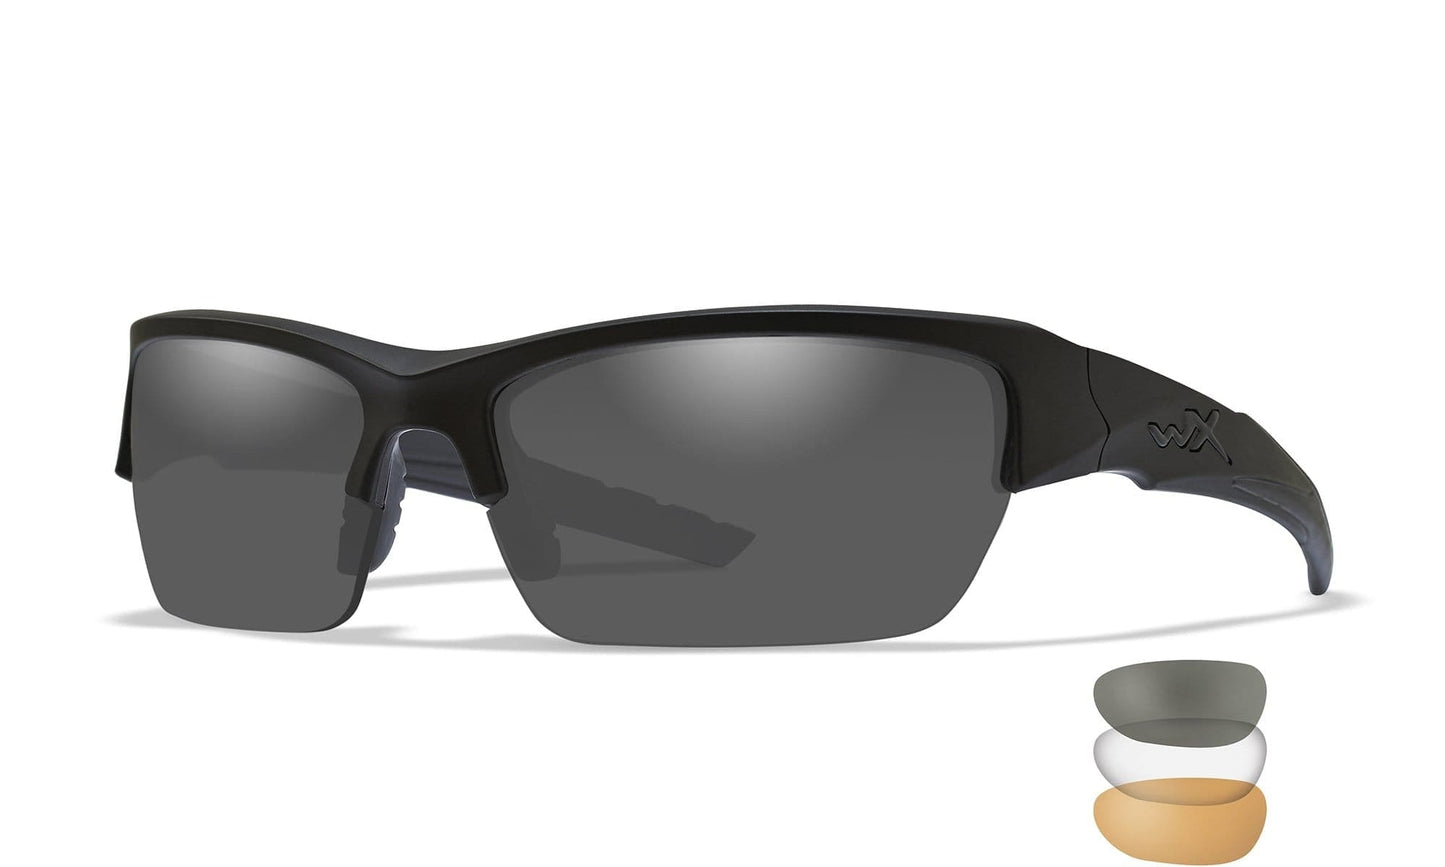 WILEY X WX Valor Sunglasses  Matte Black 70-18-120